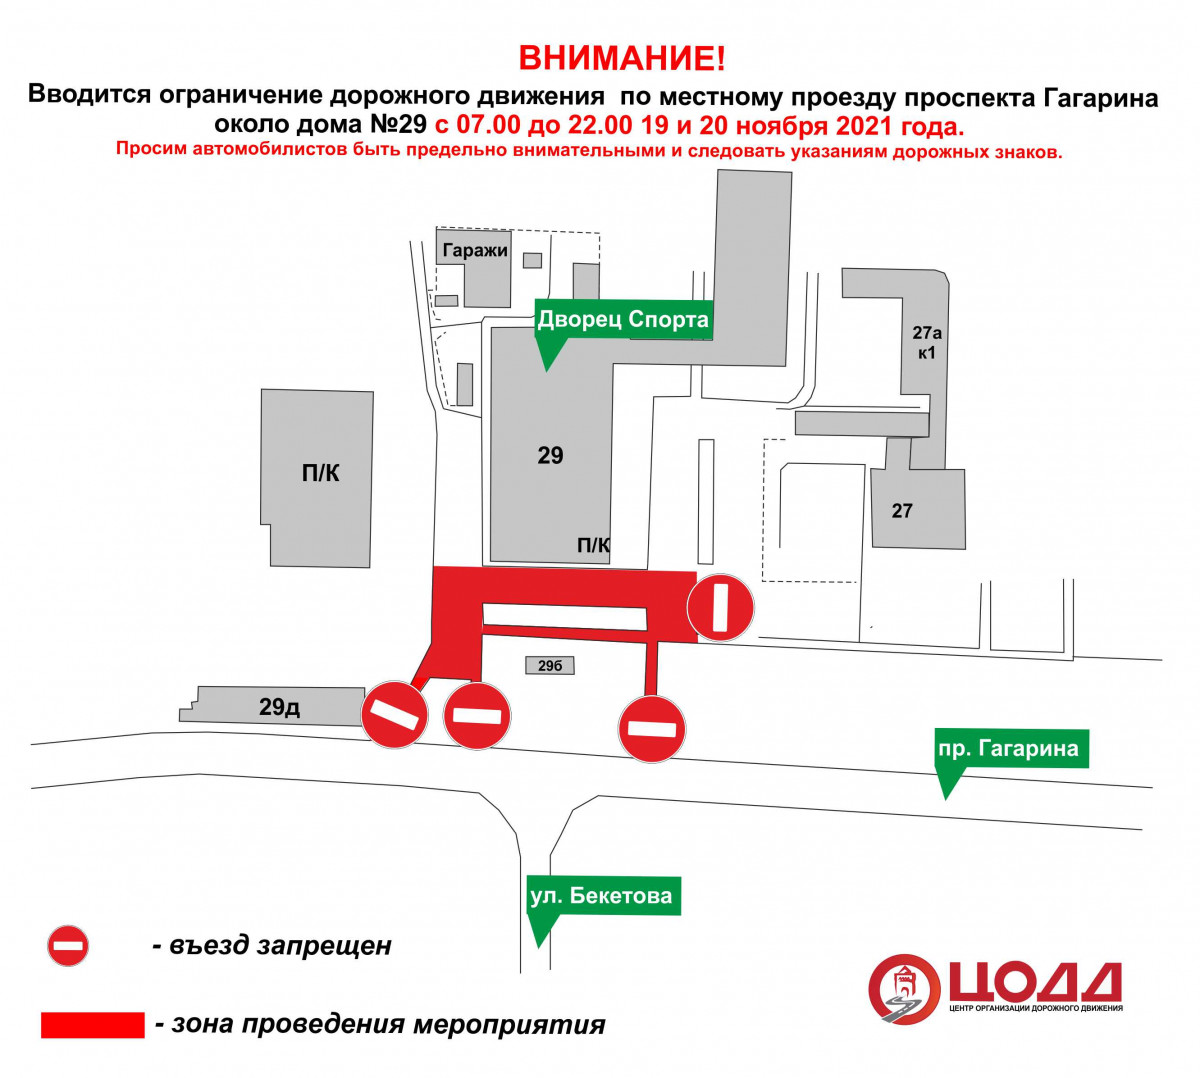 Движение транспорта приостановят по проспекту Гагарина 19 и 20 ноября